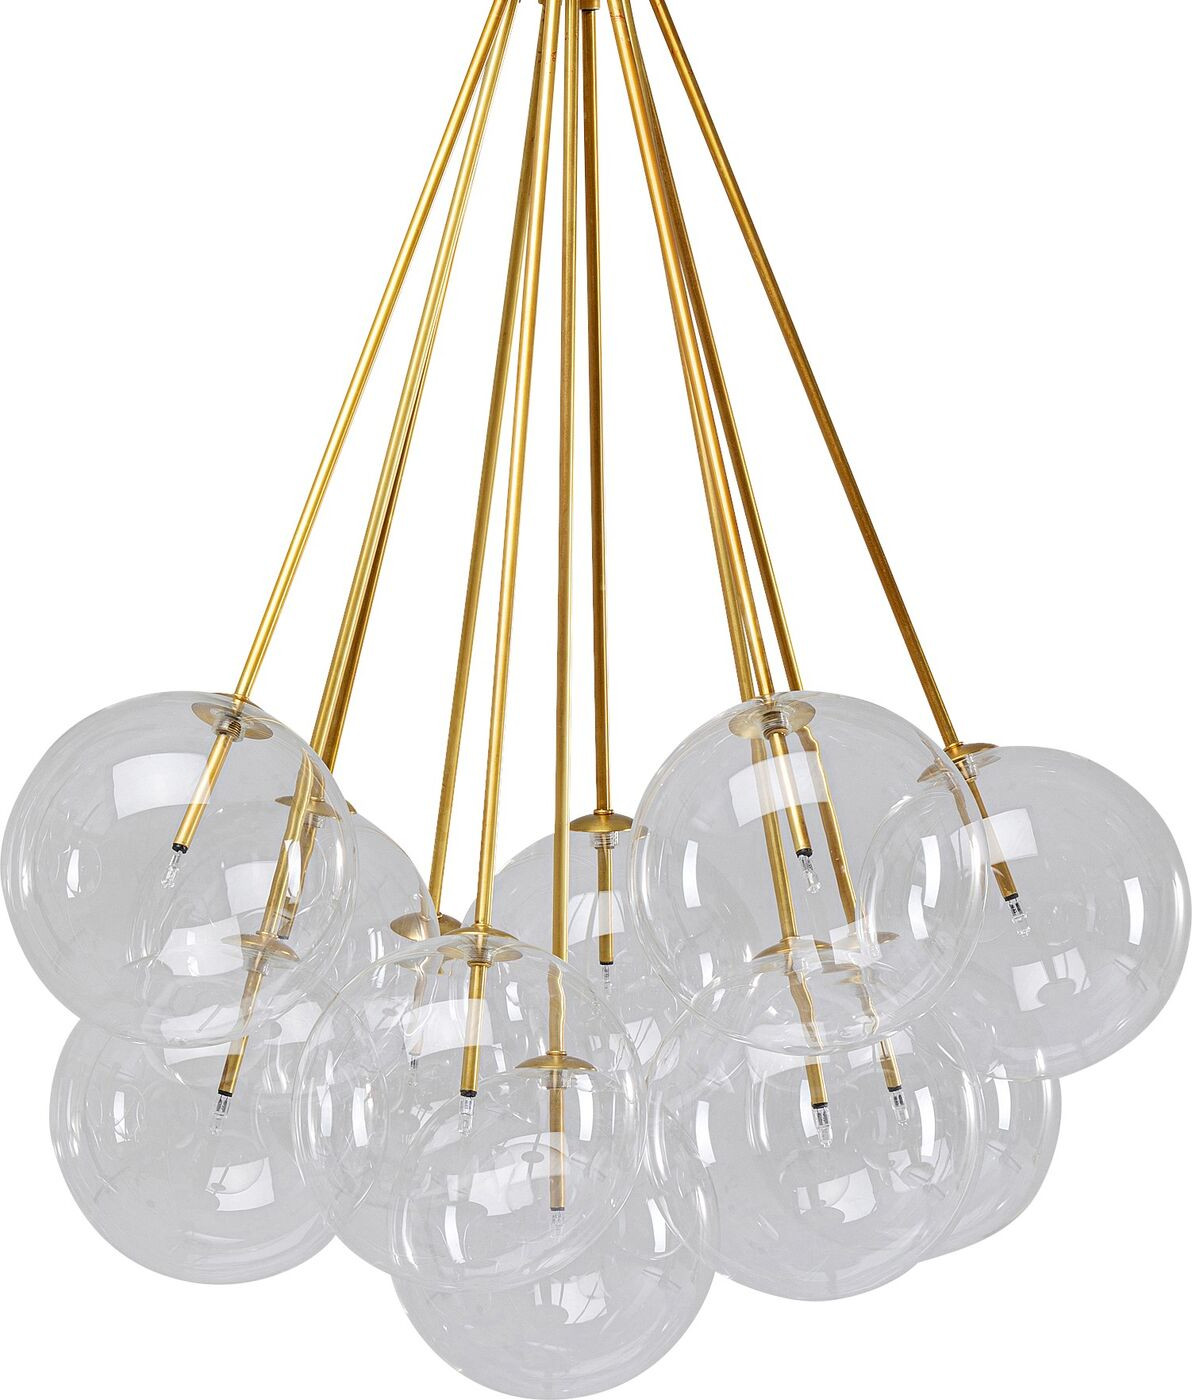 Hanglamp Balooning Kare Design Hanglamp 53755